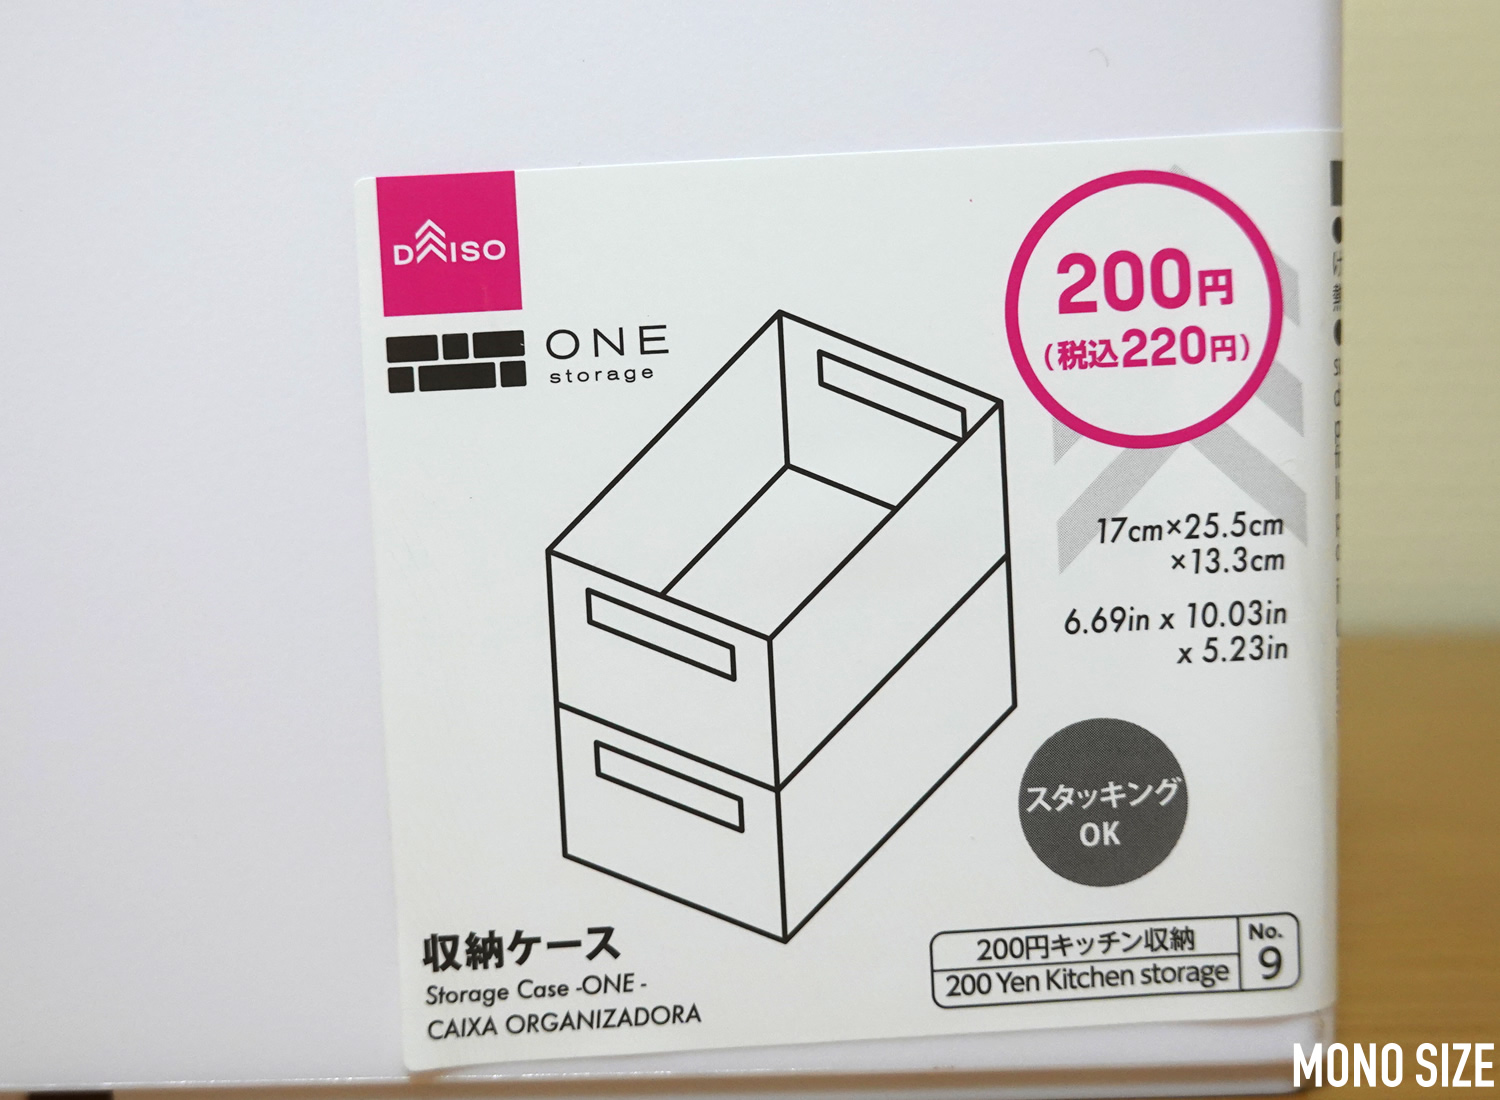 100均ダイソーで売られていたONE storage 収納ケース9の収納グッズ商品画像